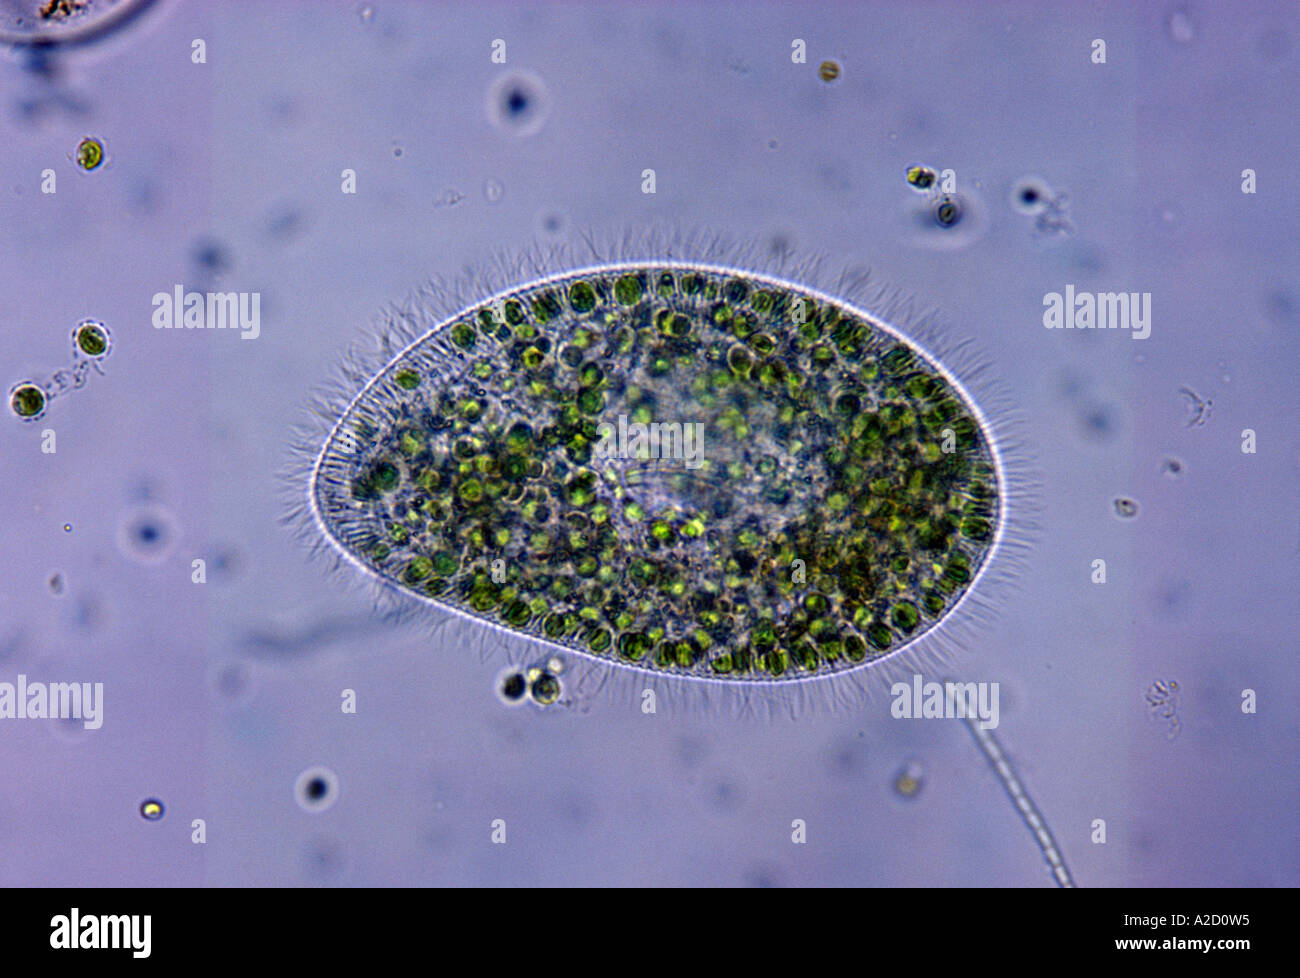 Paramecio paramecio bursaria protozoos de agua dulce mostrando cilia y zoochlorellae interno Foto de stock